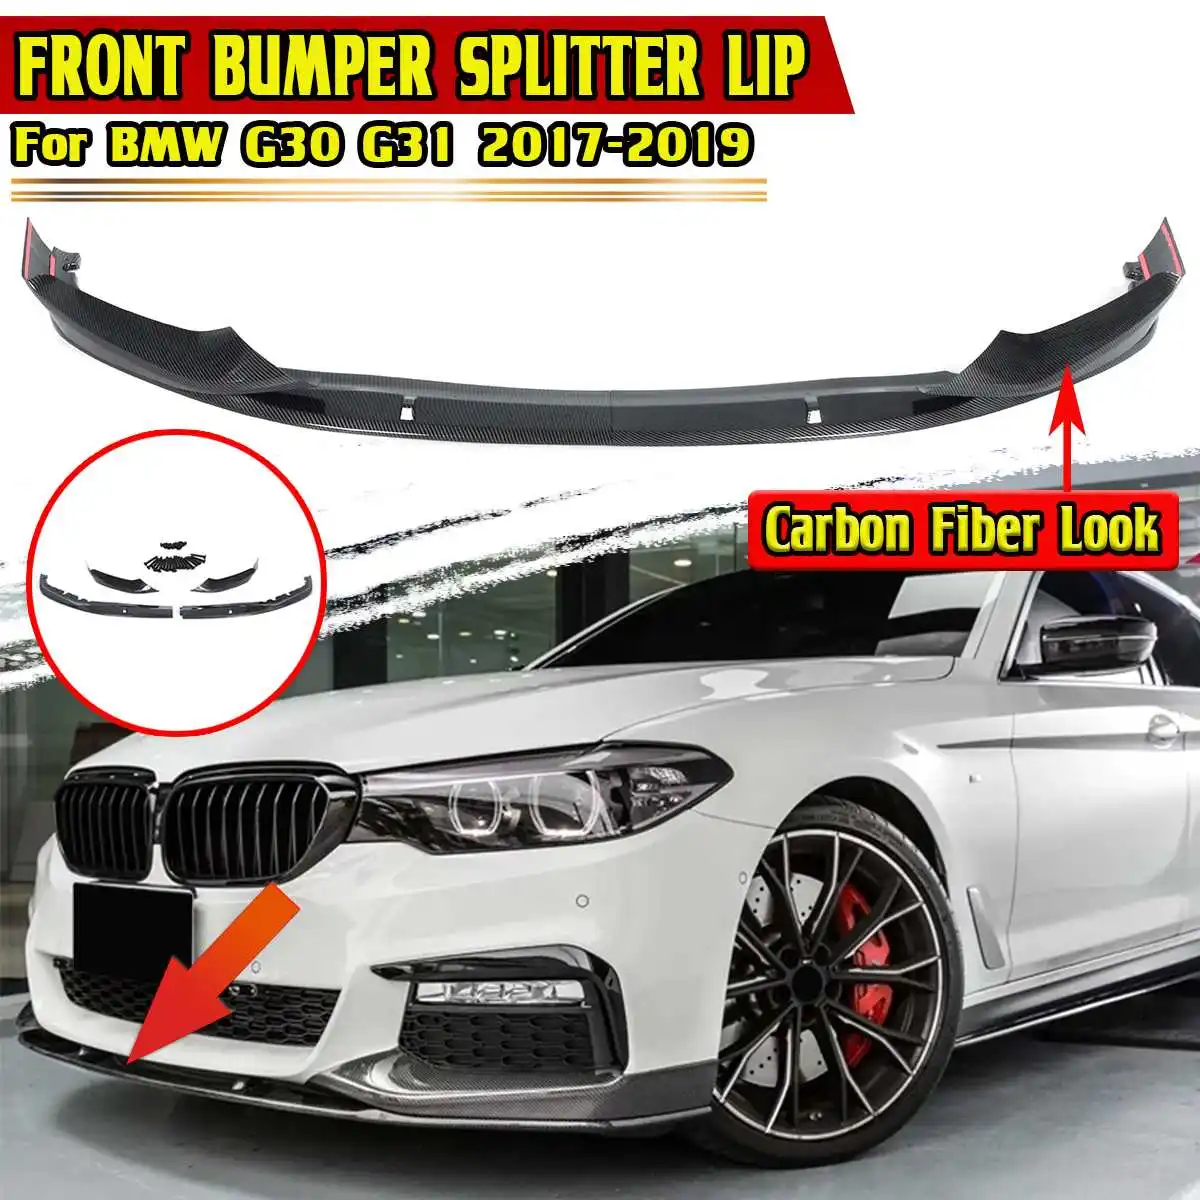 

4PCS Carbon Fiber Look Car Front Bumper Splitter Lip Diffuser Spoiler Extension Lip For BMW G30 G31 2017-2019 W/M Sport Bumper